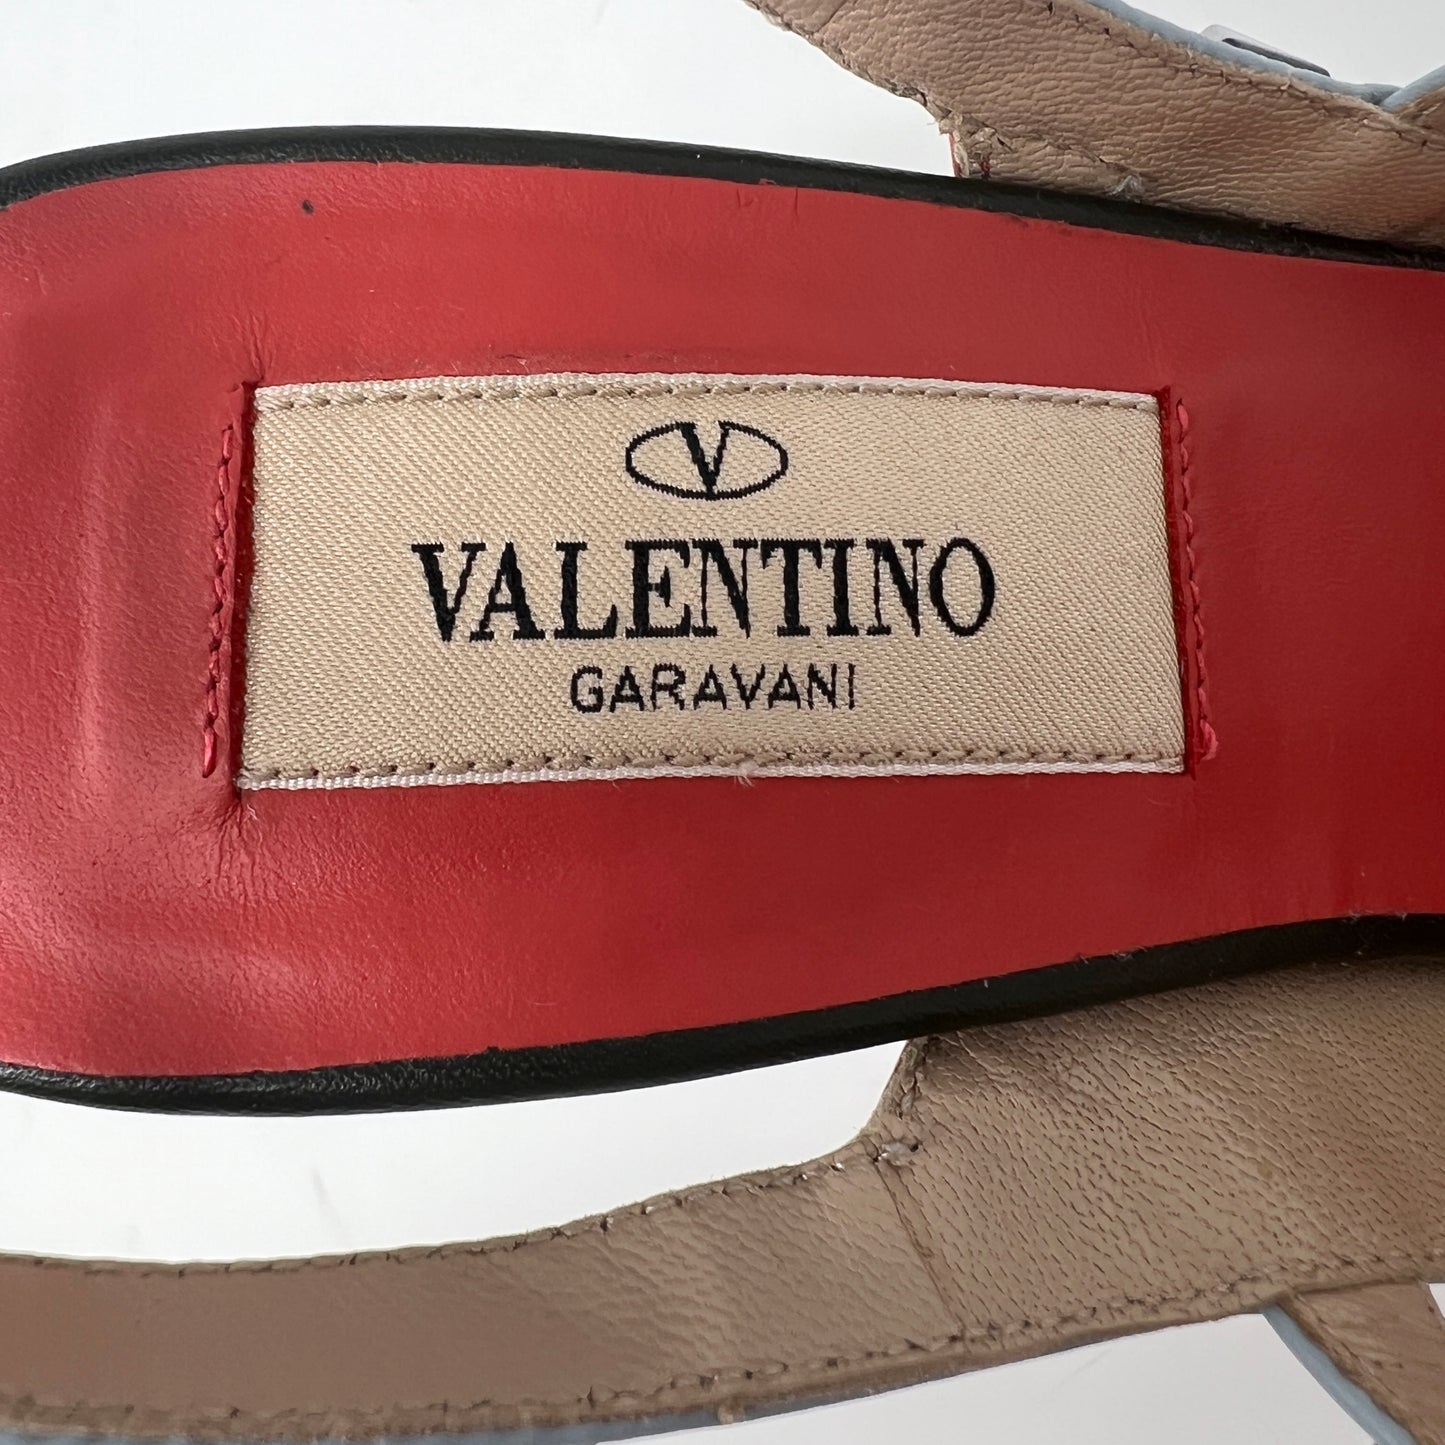 Valentino Garavani Rockstud Multicolor Leather Multi-Strap Studded Heels Pumps